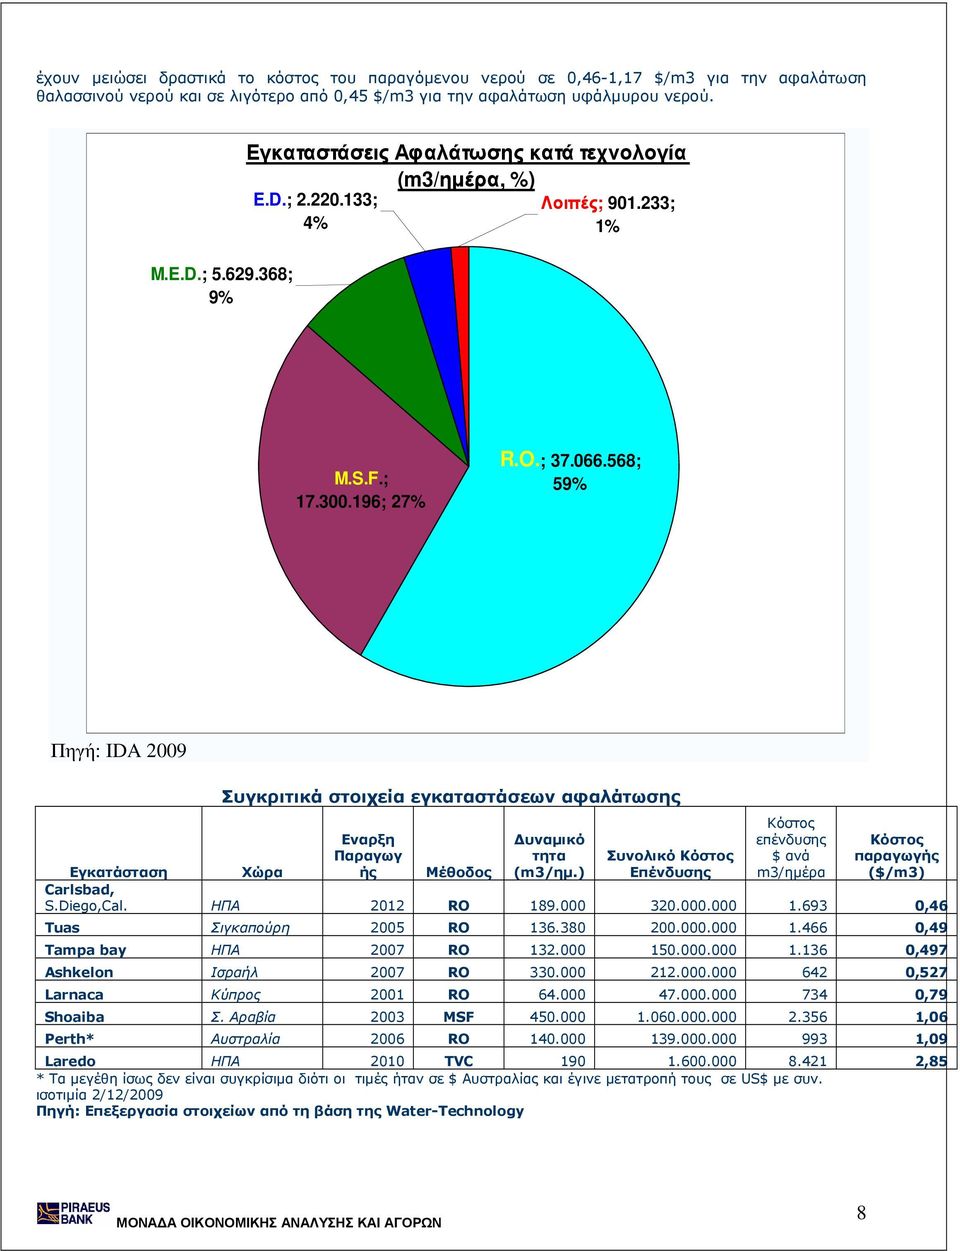 568; 59% Πηγή: IDA 2009 Συγκριτικά στοιχεία εγκαταστάσεων αφαλάτωσης Εναρξη Παραγωγ ής υναµικό τητα (m3/ηµ.